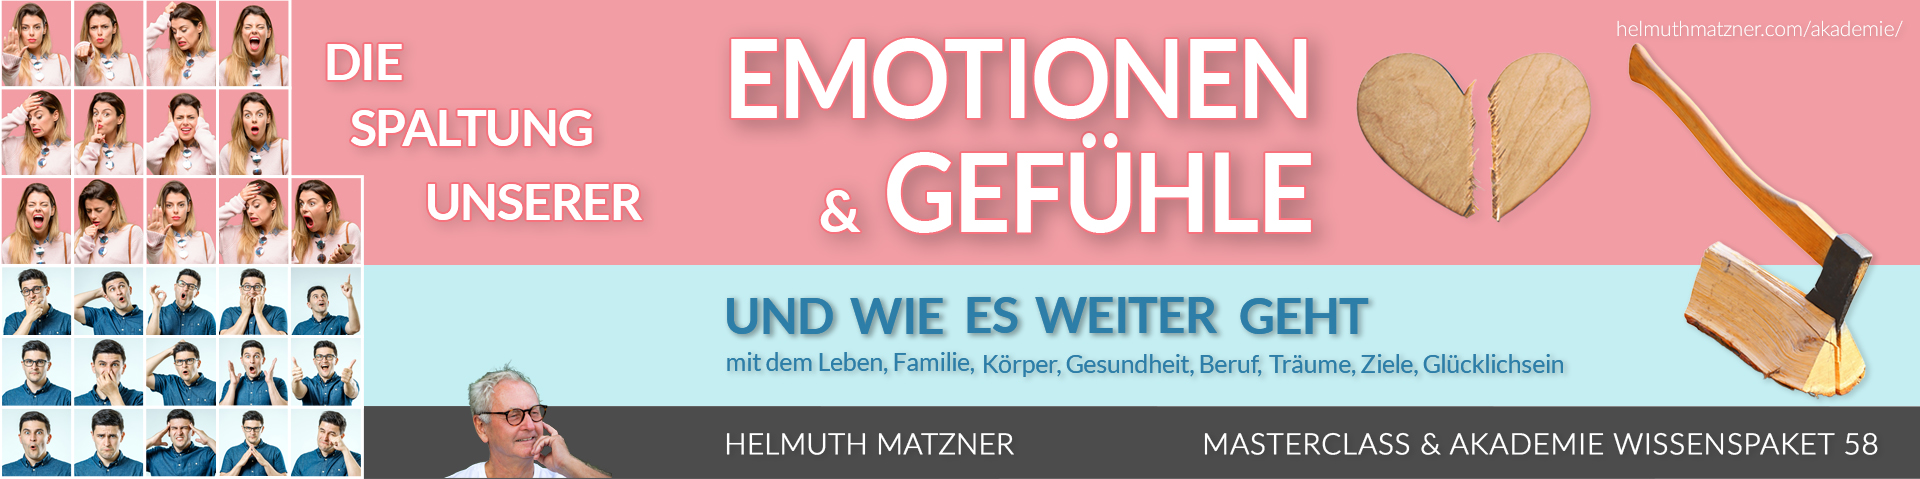 Helmuth Matzner - Masterclass & Akademie Wissenspaket 58 - Emotionen, Gefühle, Spaltung - LP-BANNER v02